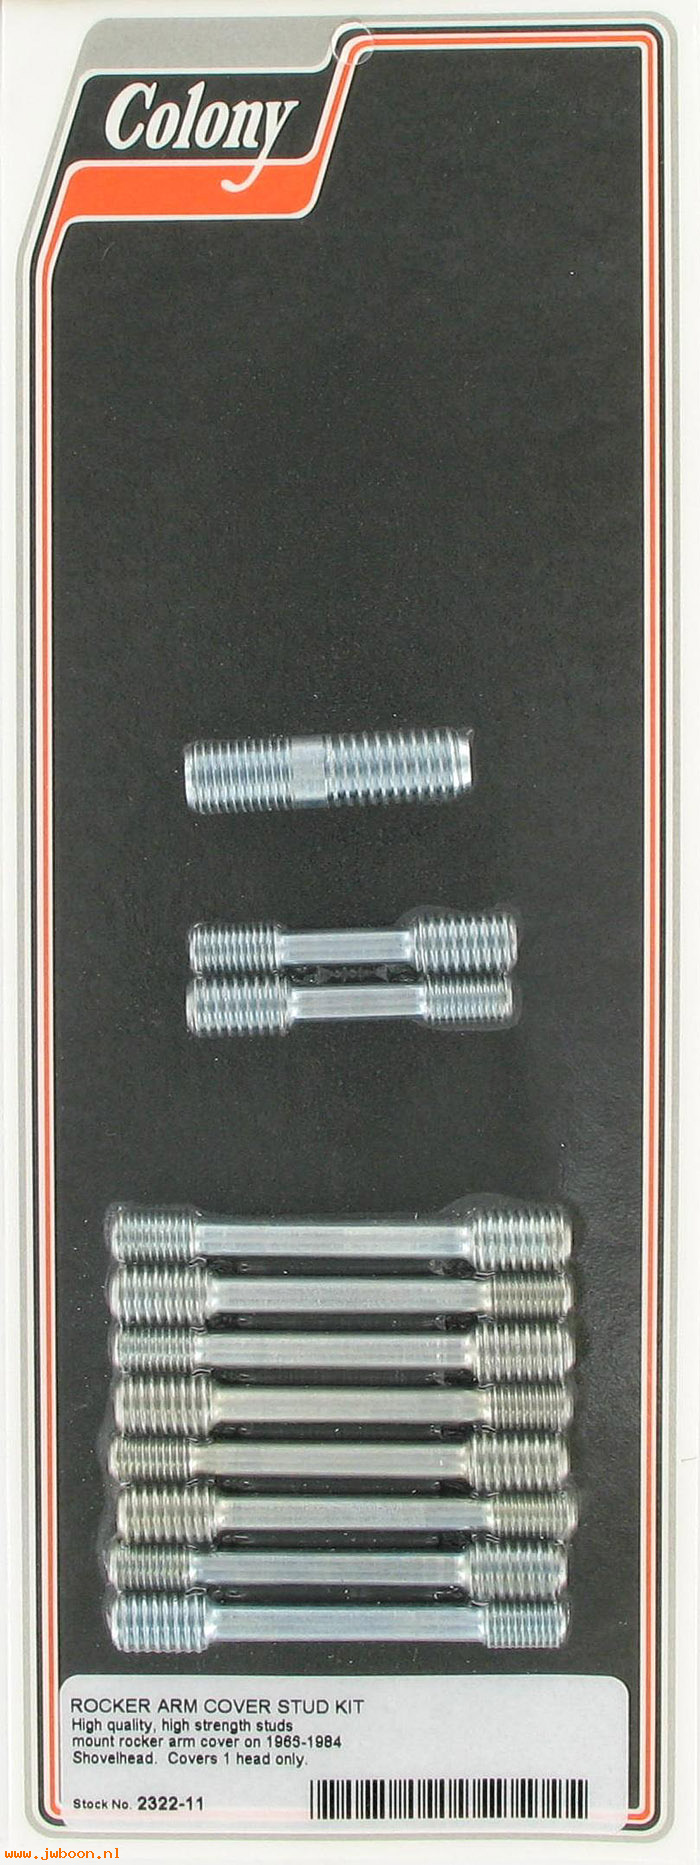 C 2322-11 (17506-66 / 17508-66): Rocker arm cover stud kit - FL's '66-'84, in stock, Colony